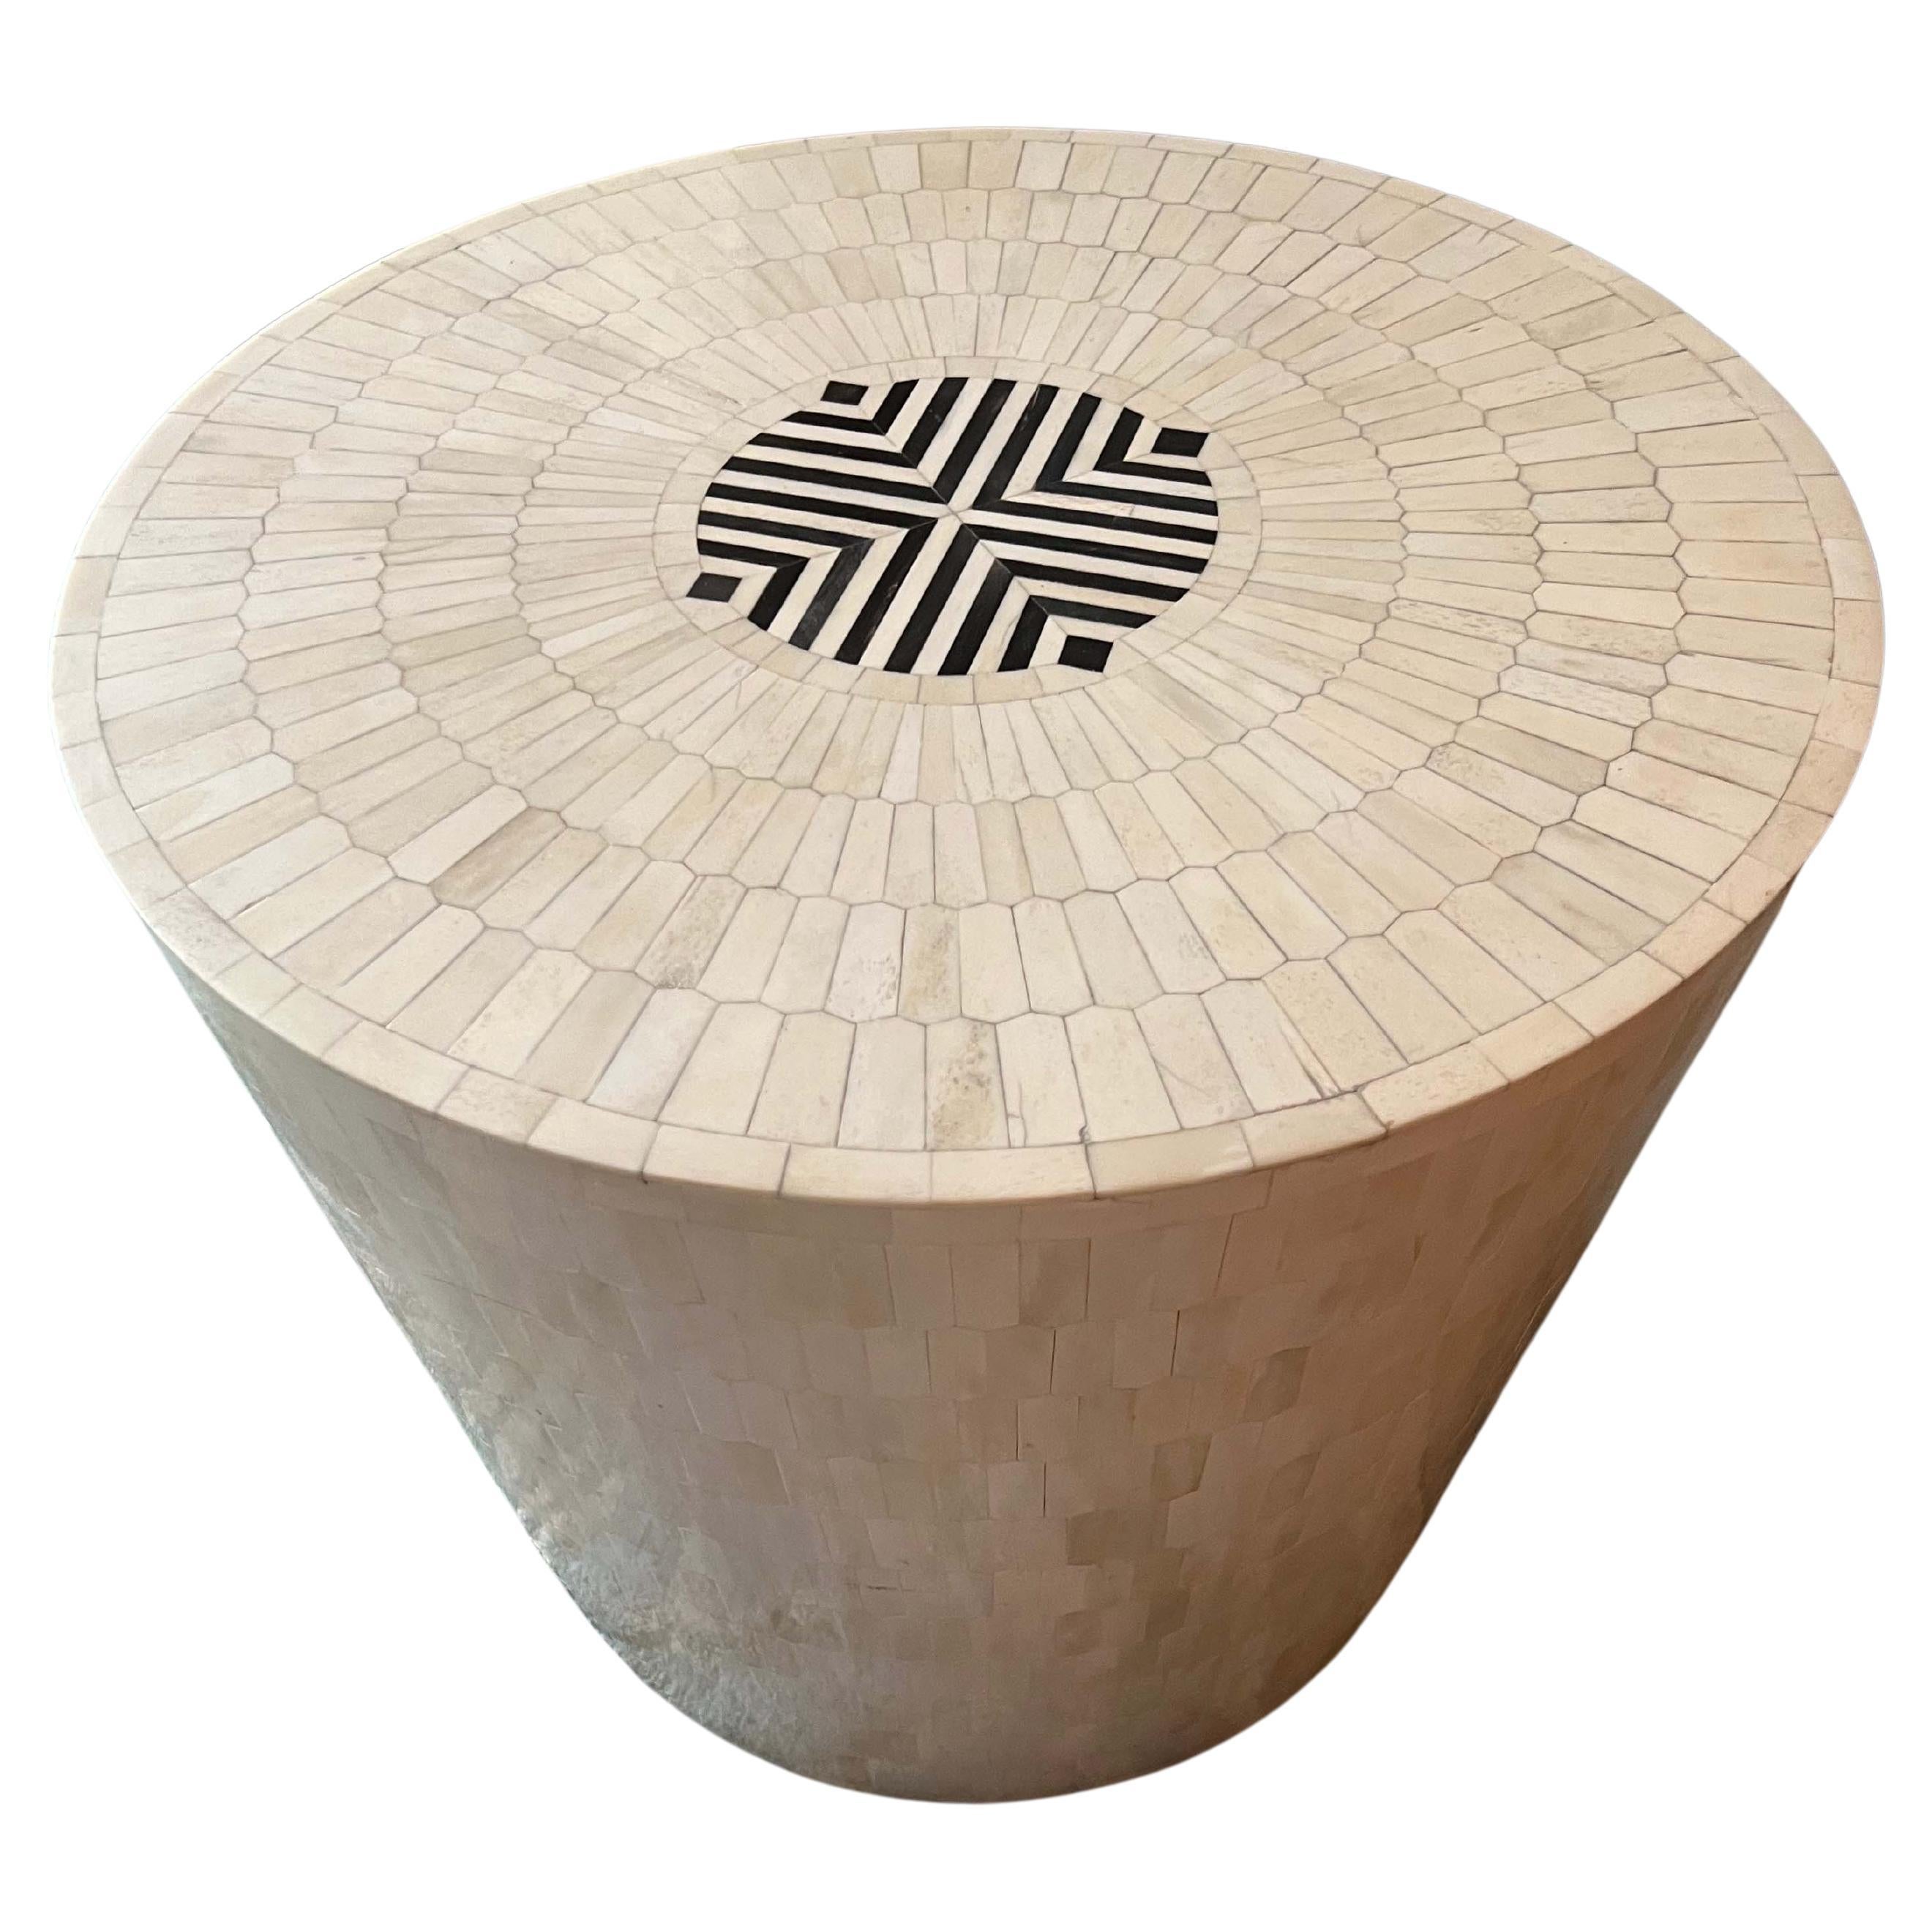 Der Arena Hocker oder Beistelltisch ist aus Holz gefertigt und mit Hunderten von nachhaltig beschafften, handgeschnitzten sechseckigen Knochenspänen mosaikartig verziert, die ein subtiles Ton-in-Ton-Muster ergeben. Die Oberseite ist mit einer